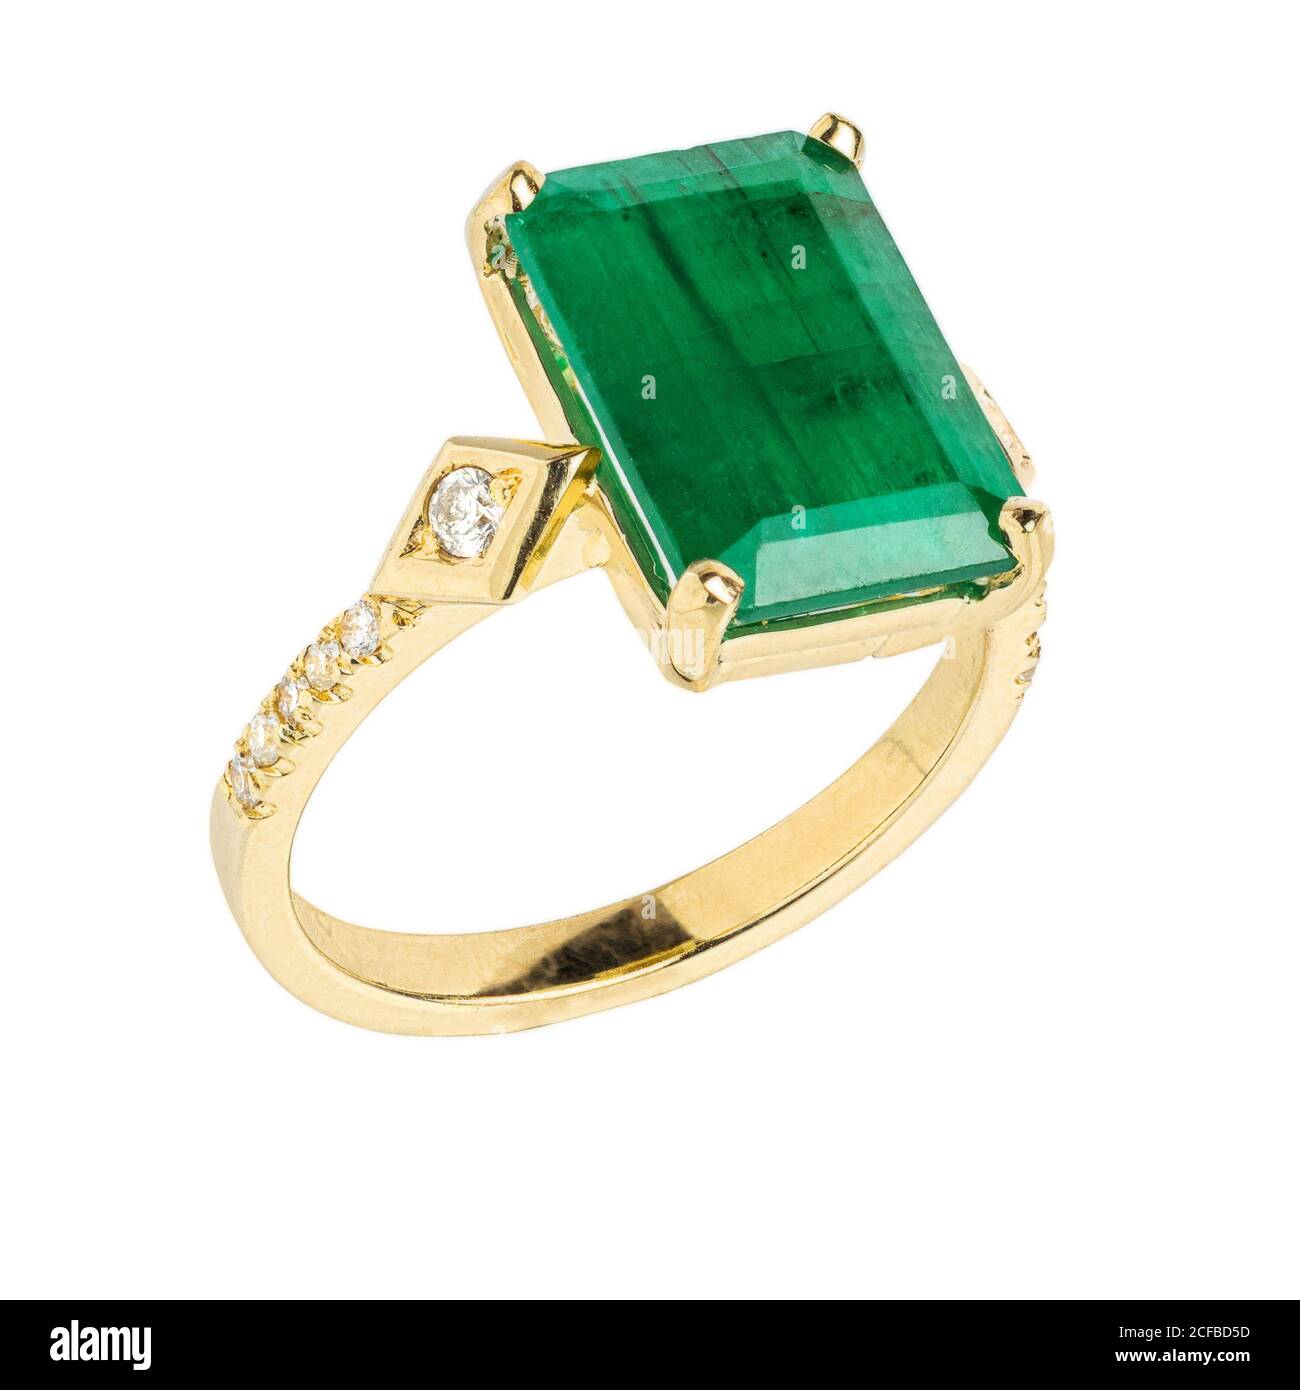 Gold diamond and gemstone wedding ring closeup macro isolated on white background Stock Photo